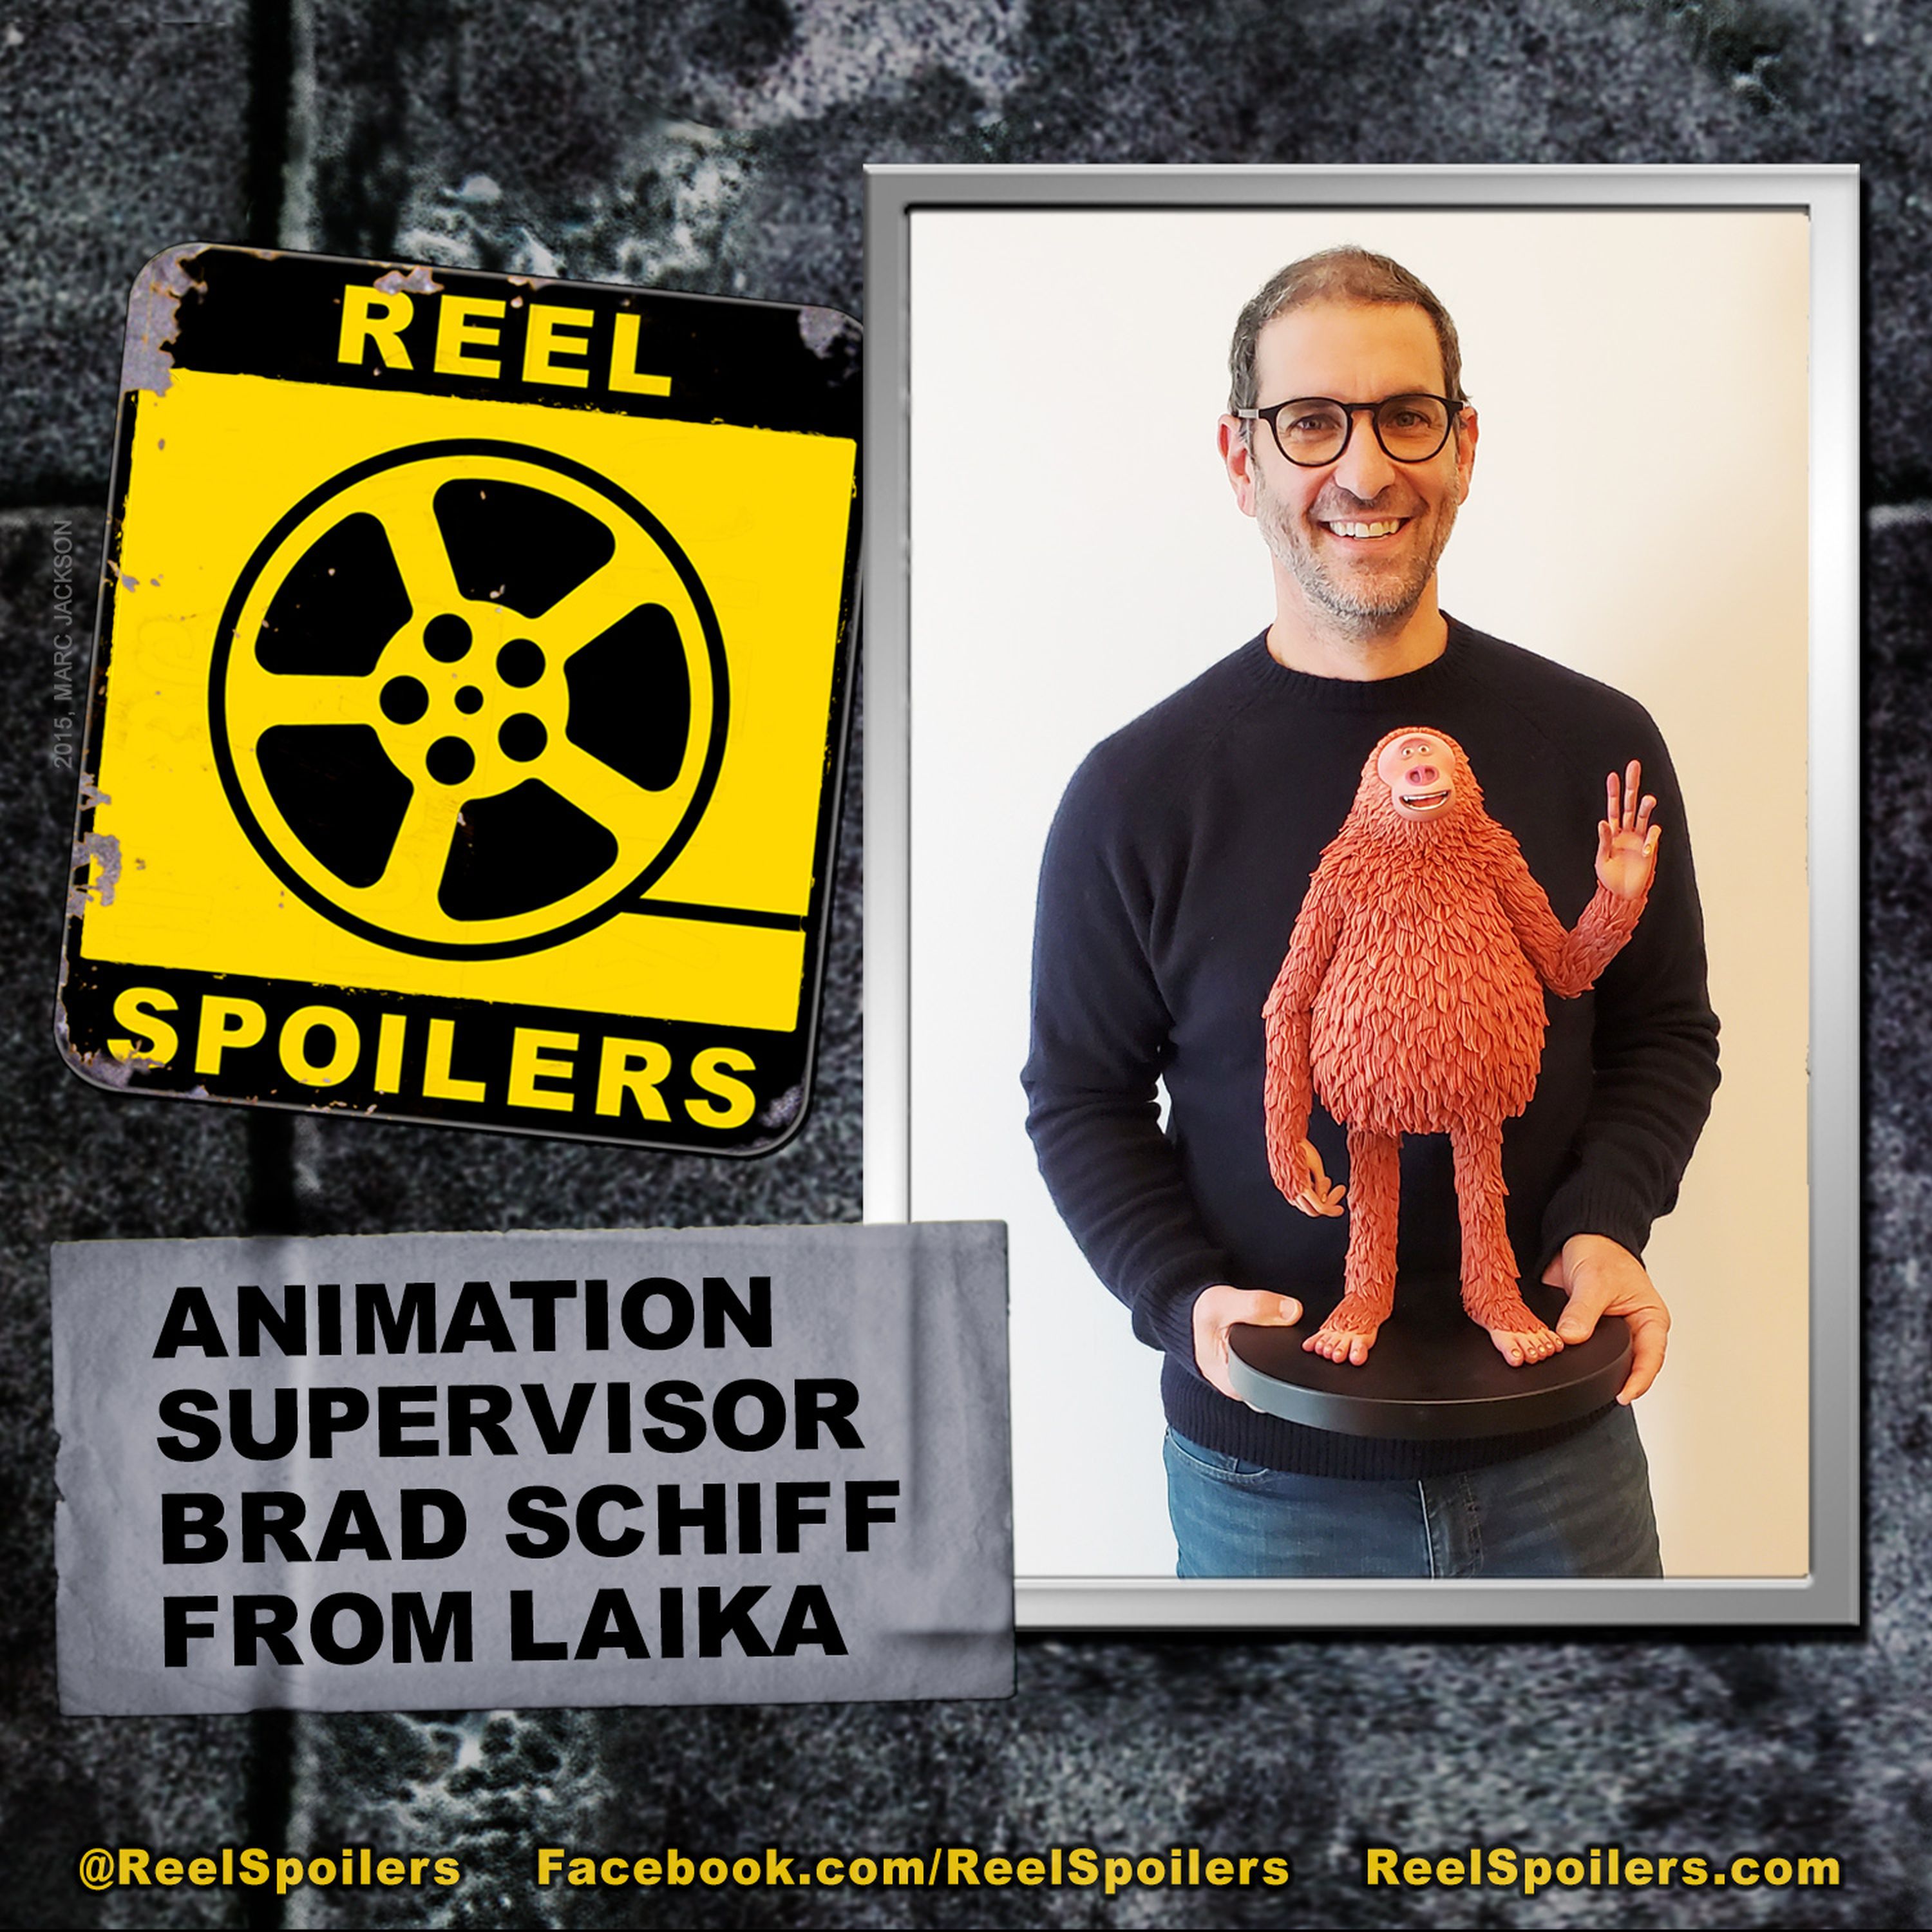 LAIKA Animation Supervisor Brad Schiff Image